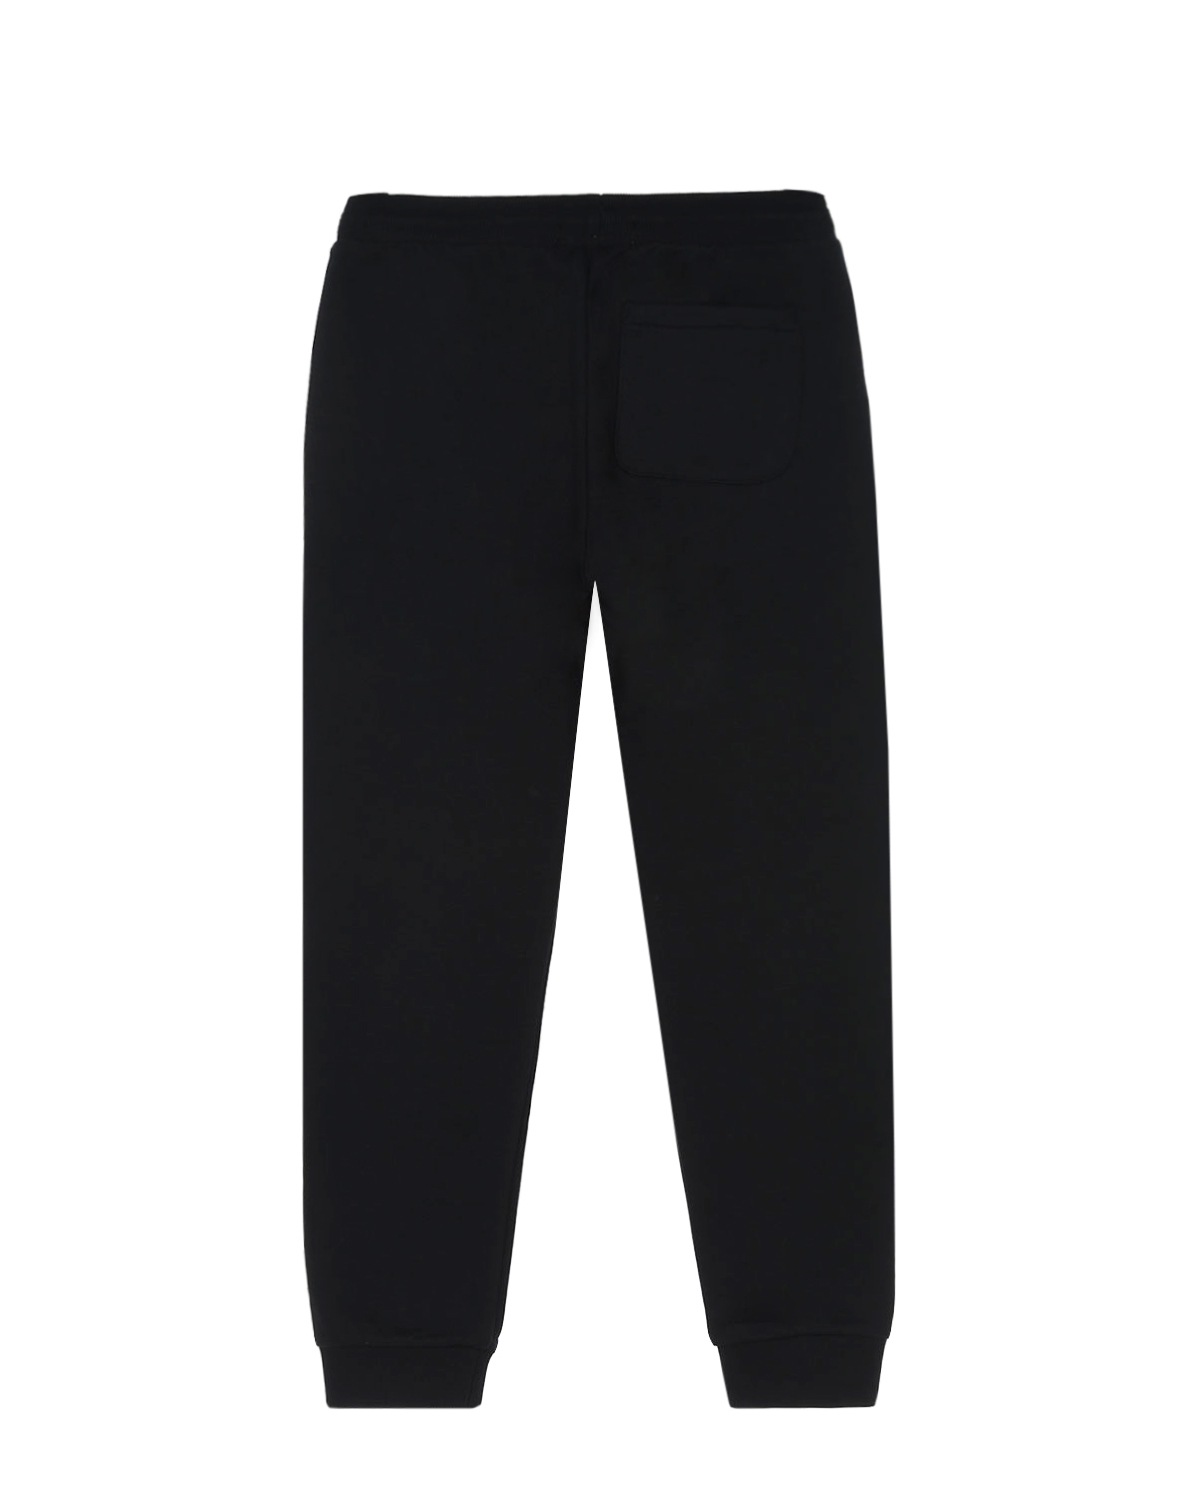 Спортивные брюки с брендированным кантом Calvin Klein детские, размер 152, цвет черный - фото 2